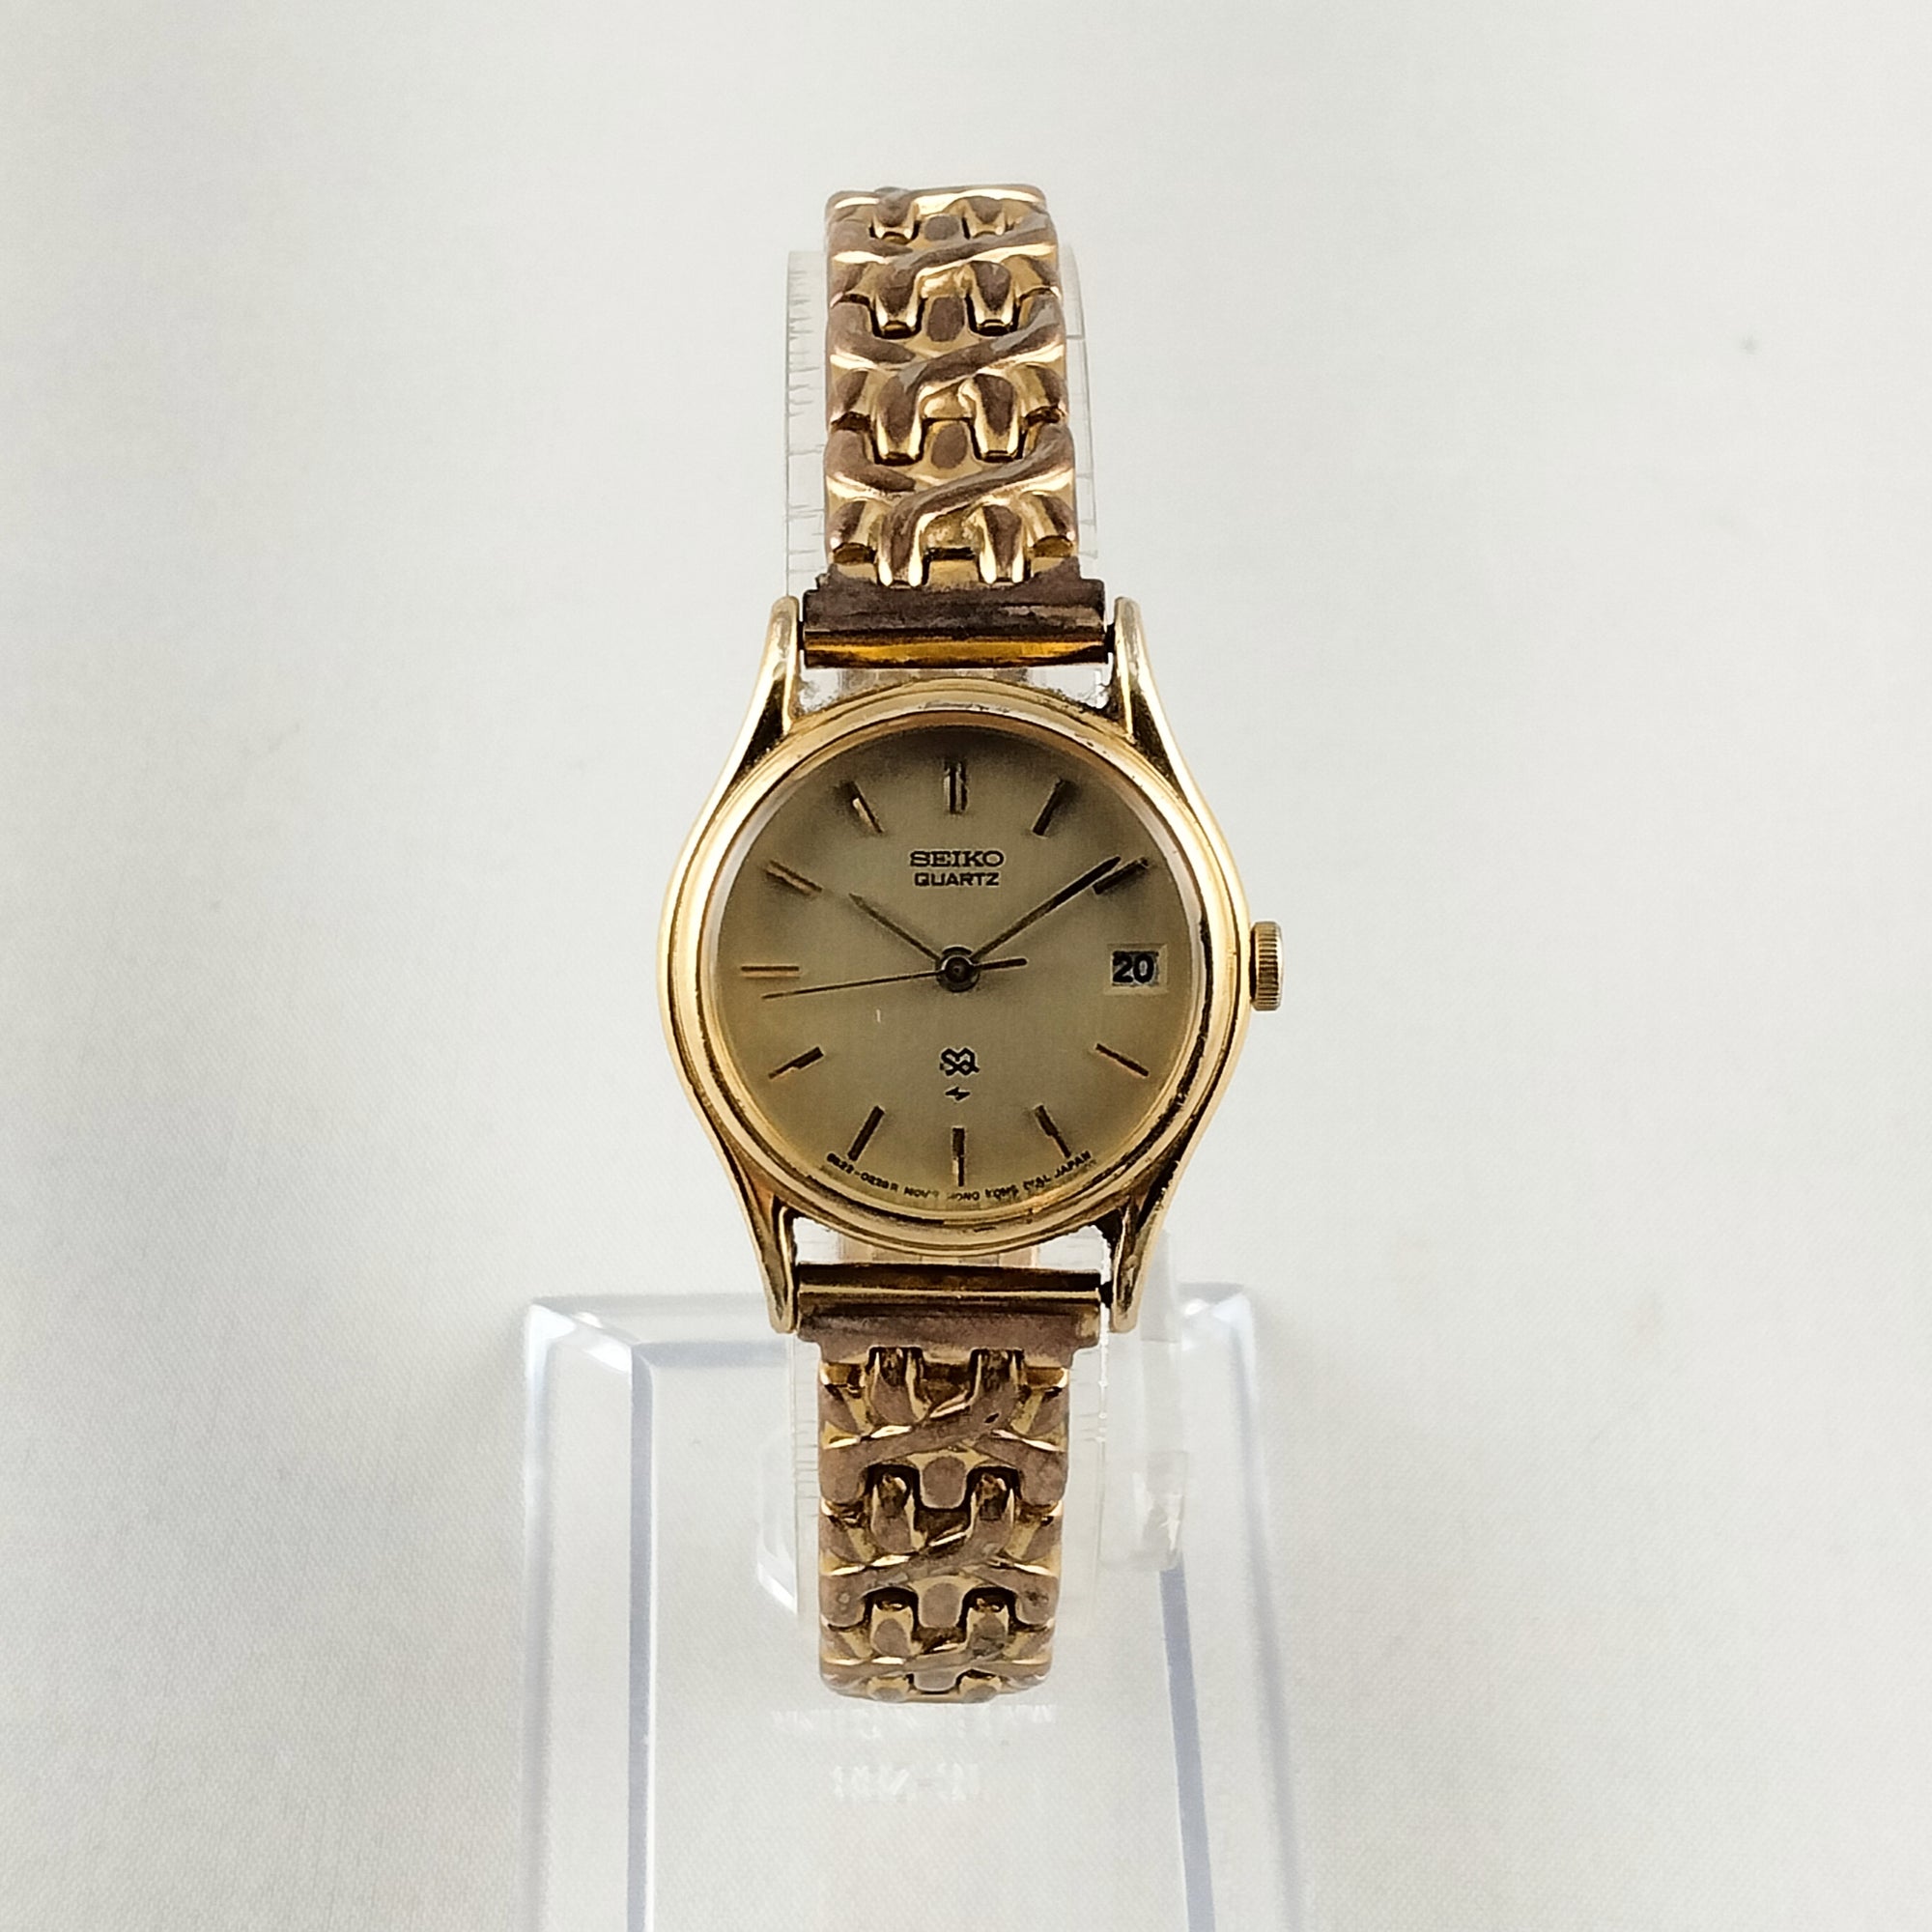 Seiko Women's All Gold Tone Watch, Date Window, Link Bracelet Strap